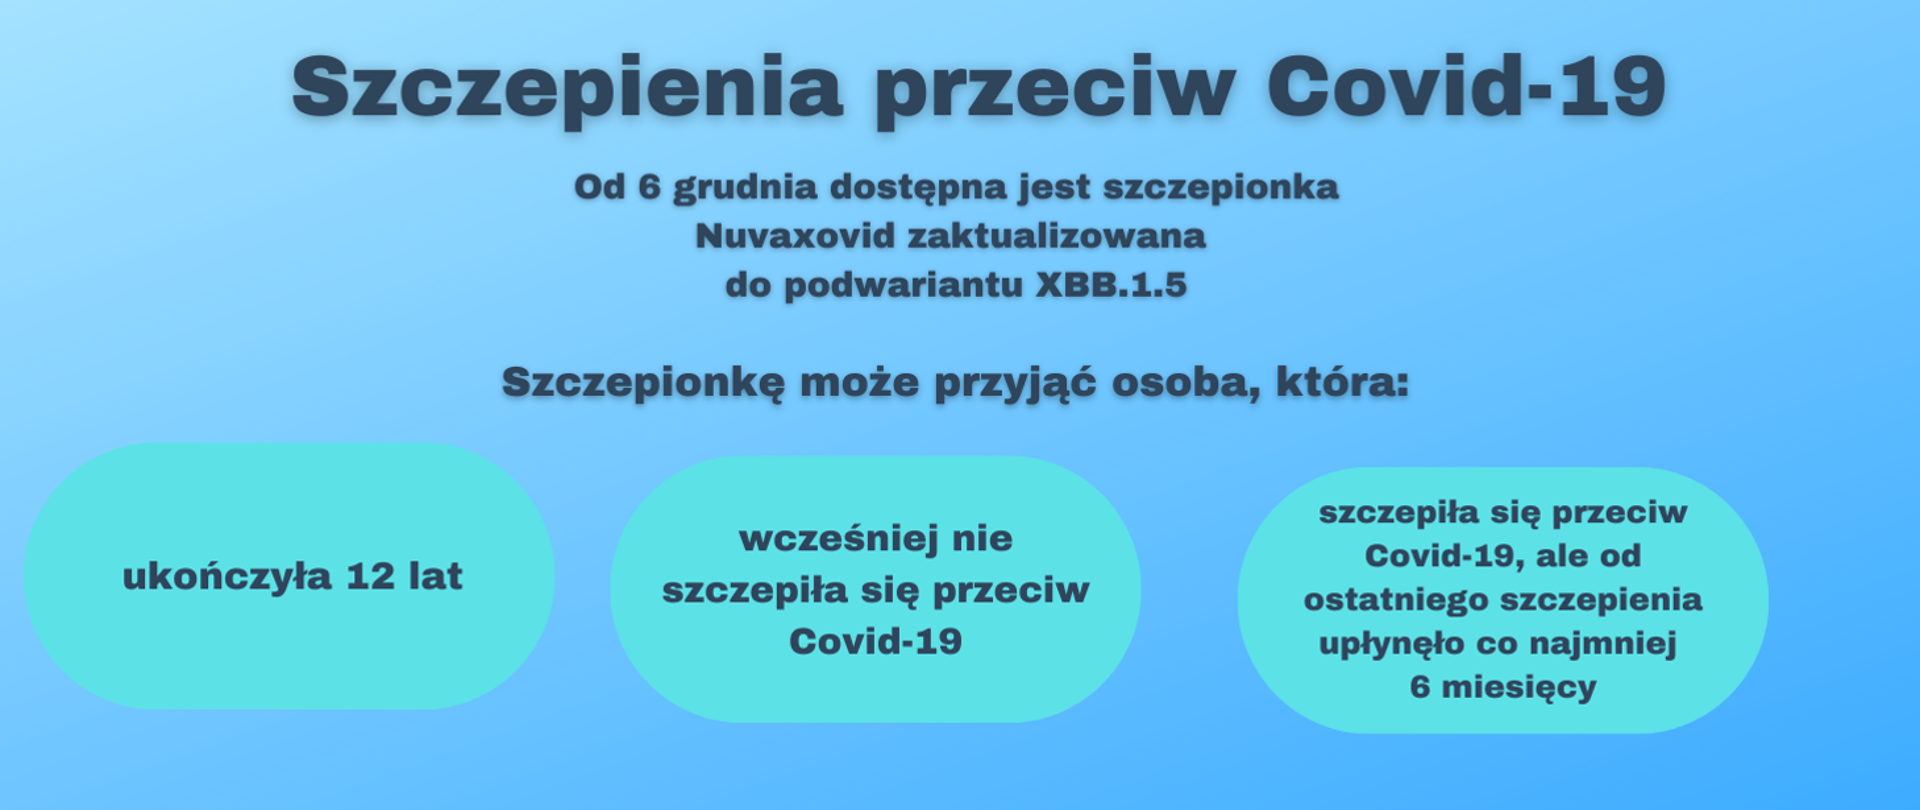 Szczepienia przeciw Covid-19